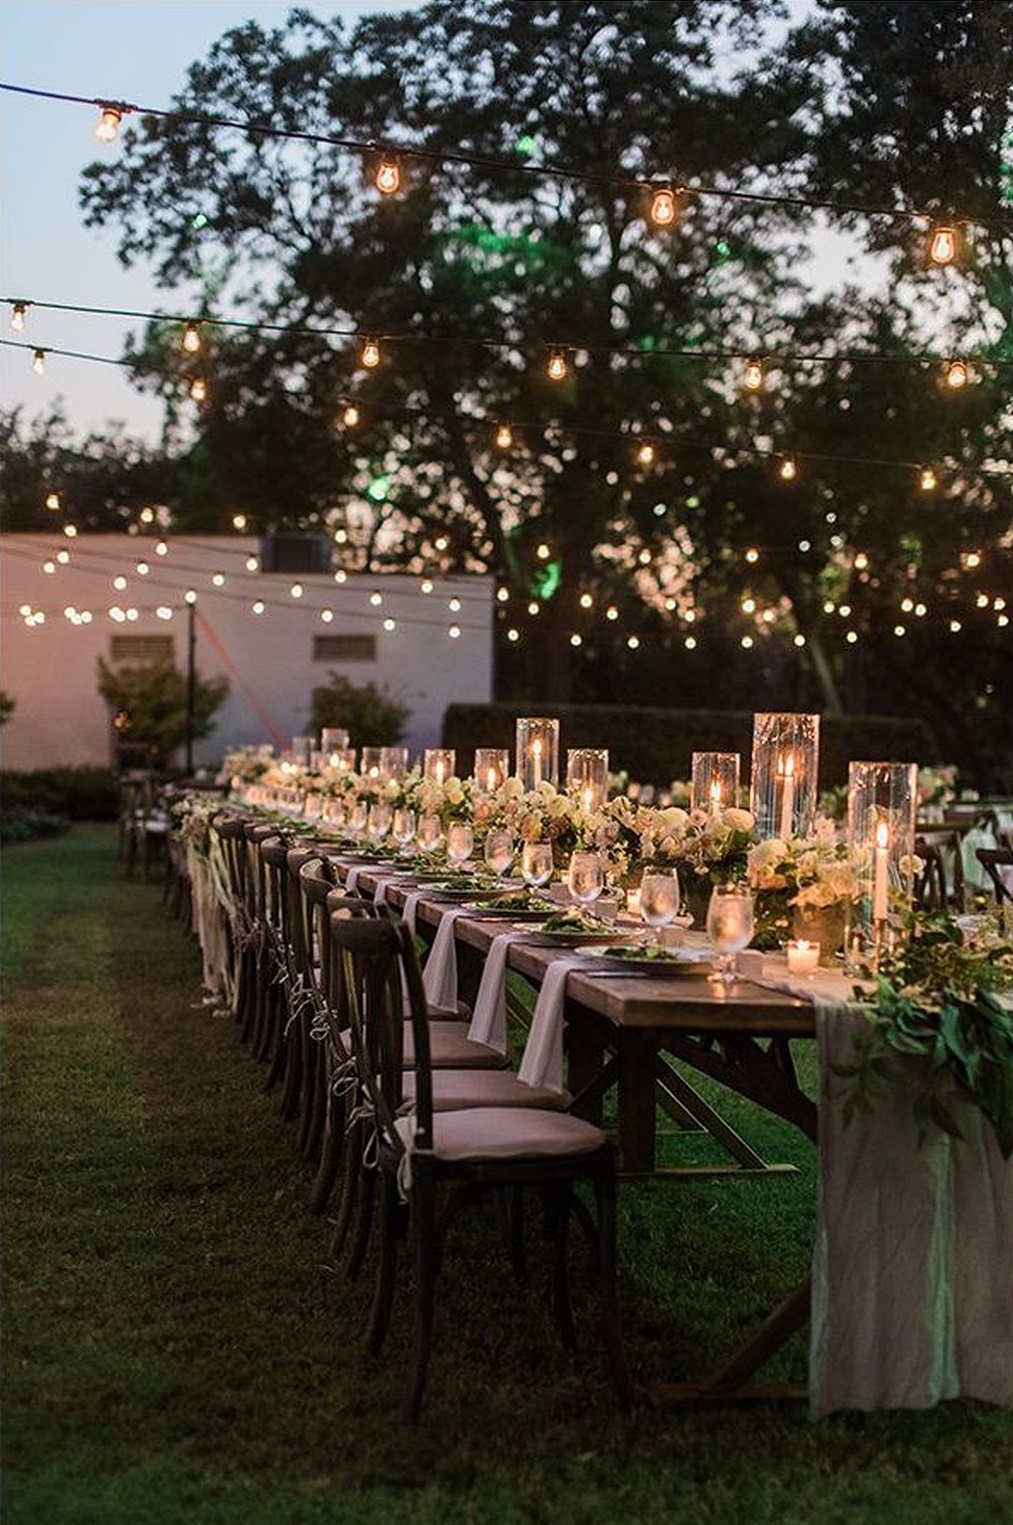 décoration lumineuse mariage bougies guirlandes thème champêtre ambiance romantique extérieur